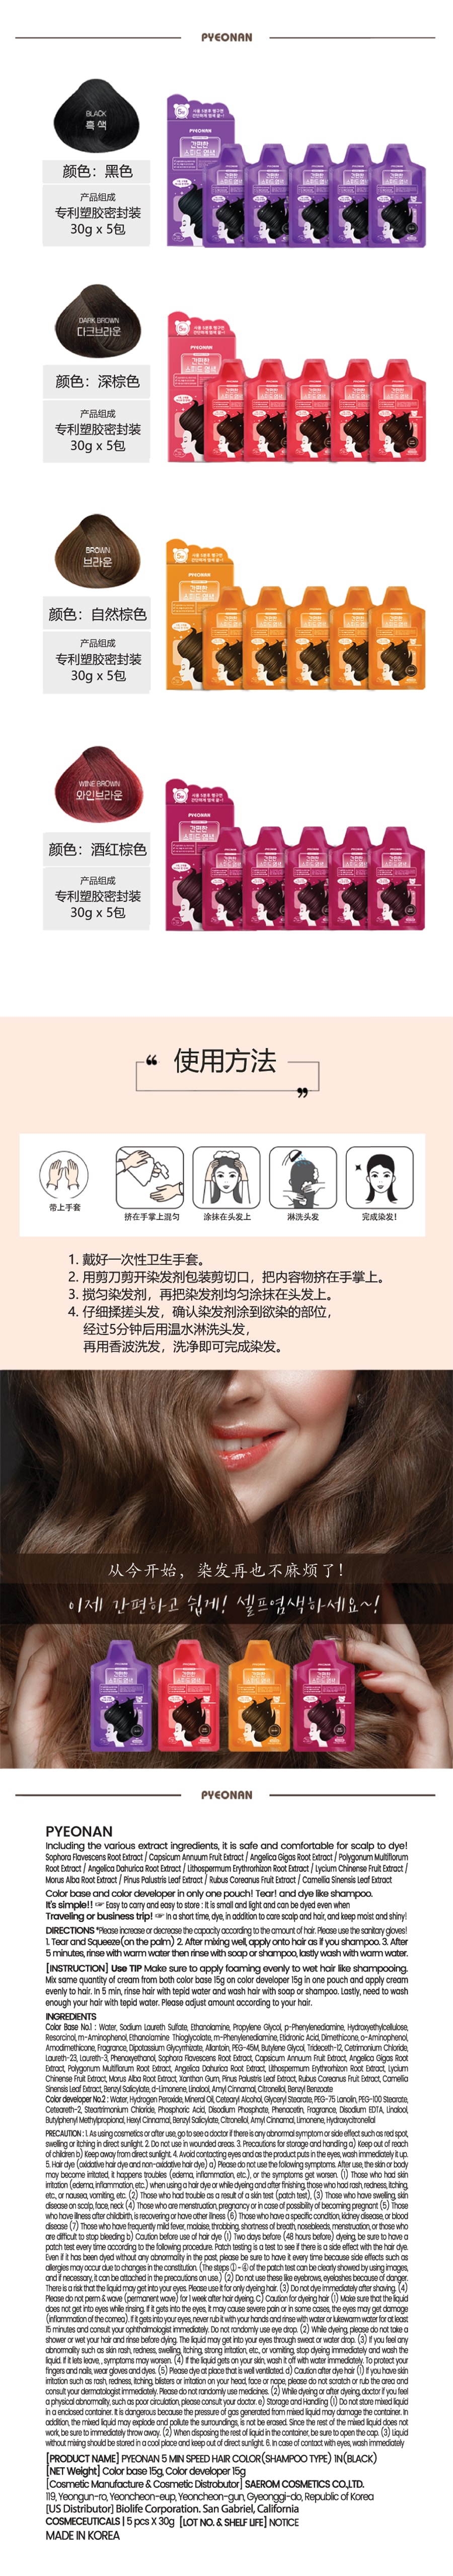 韓國 PYEONAN 5分鐘快速超簡單 香波型染髮劑 #自然黑 5包/盒